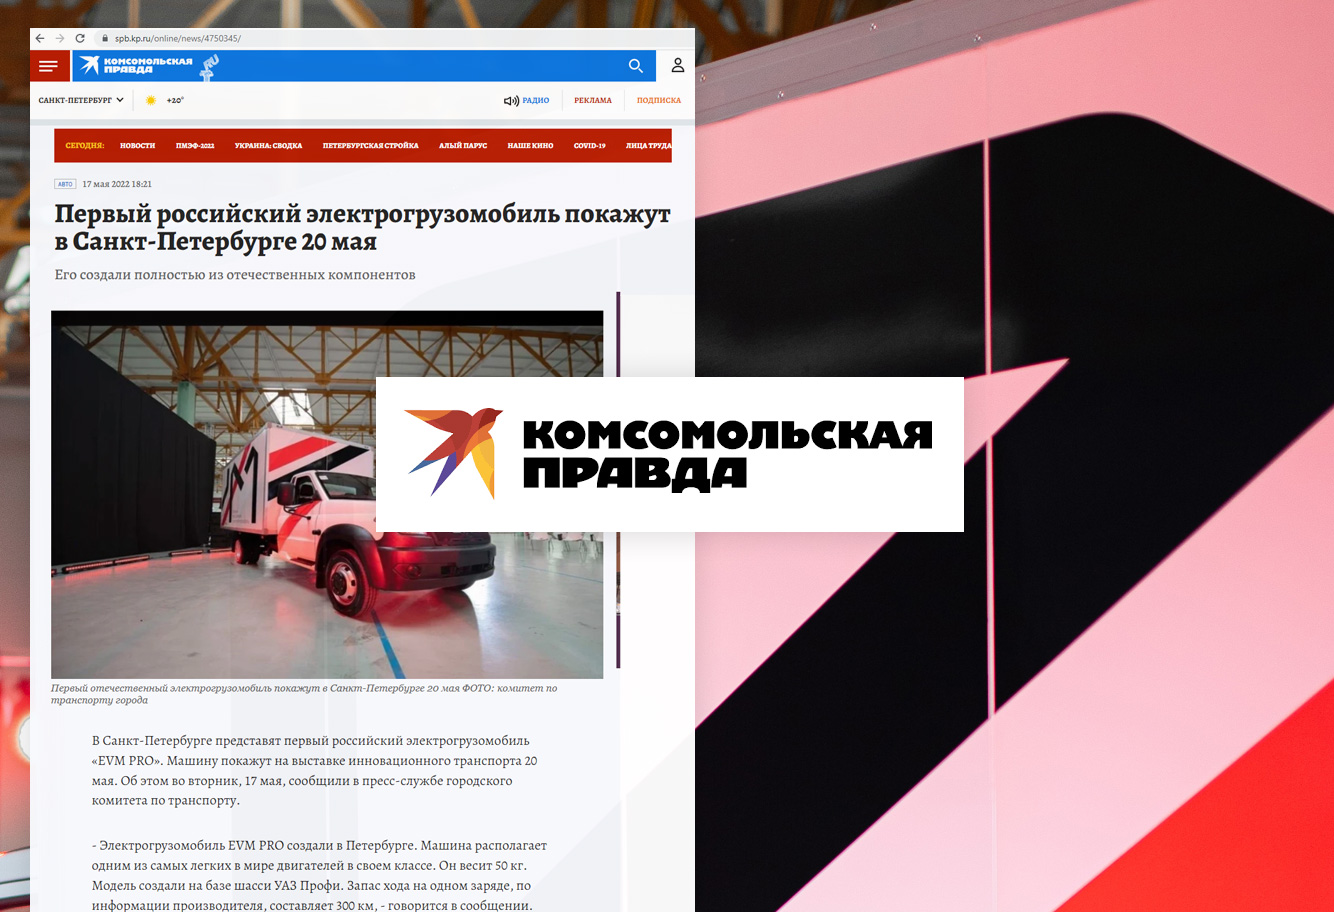 Первый российский электрогрузомобиль покажут в Санкт-Петербурге 20 мая